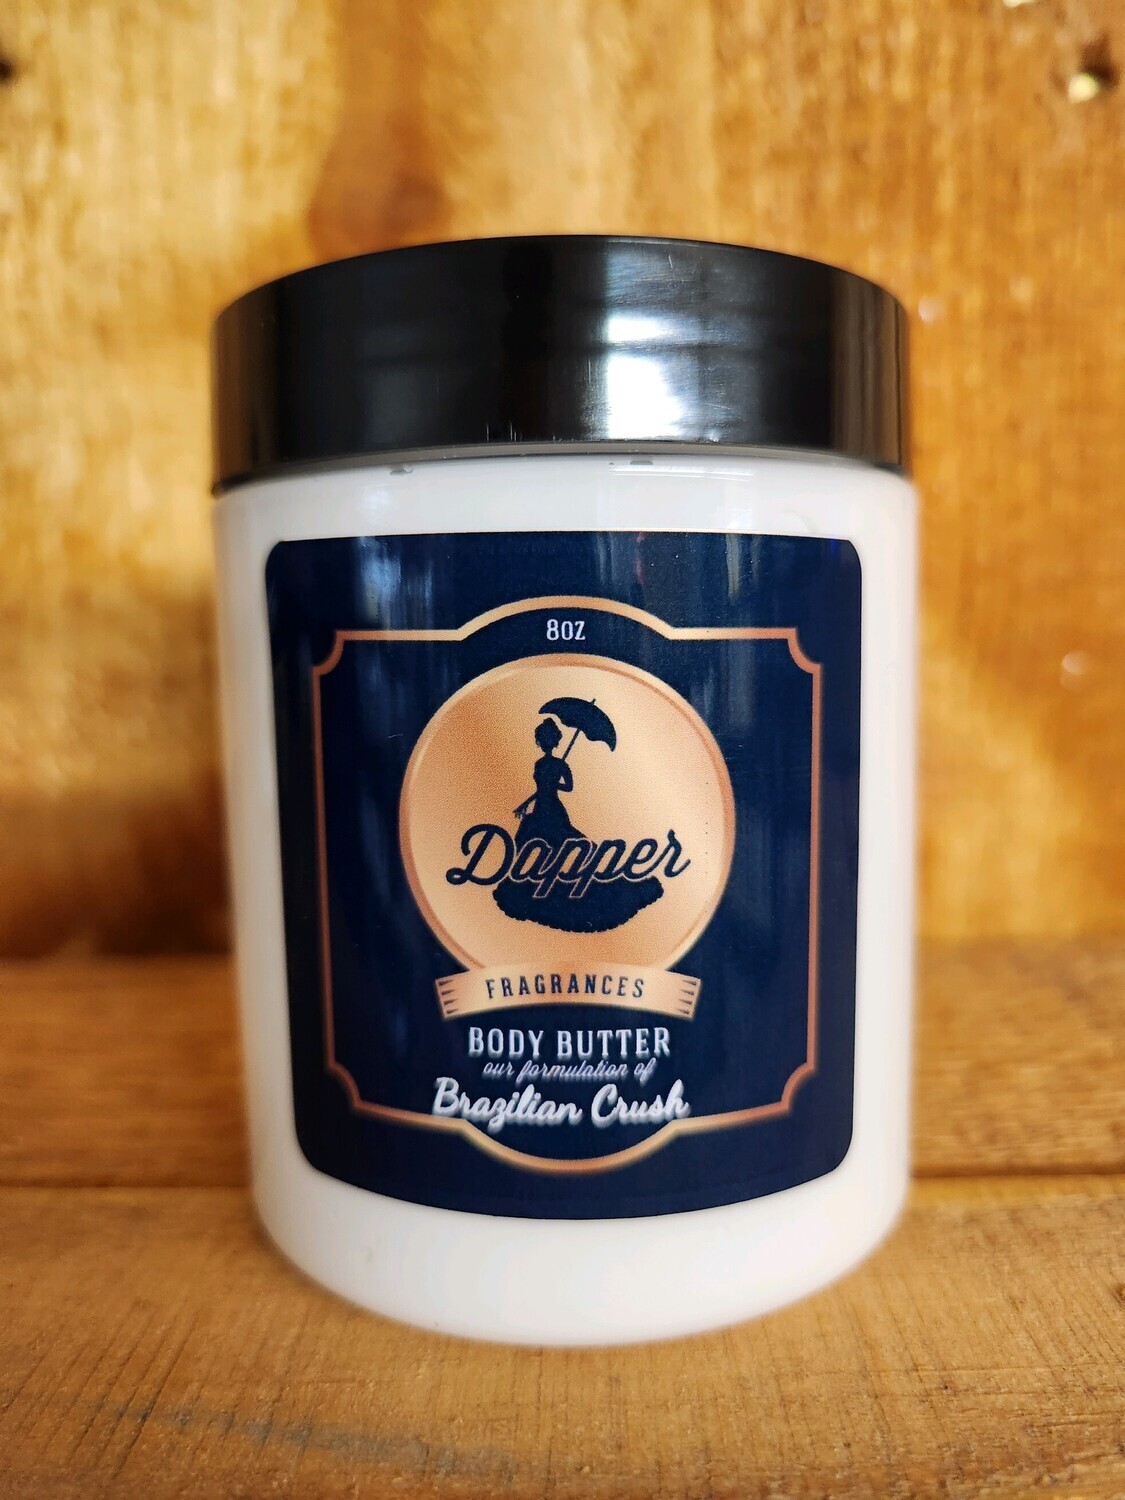 Dapper fragrances Body Butter